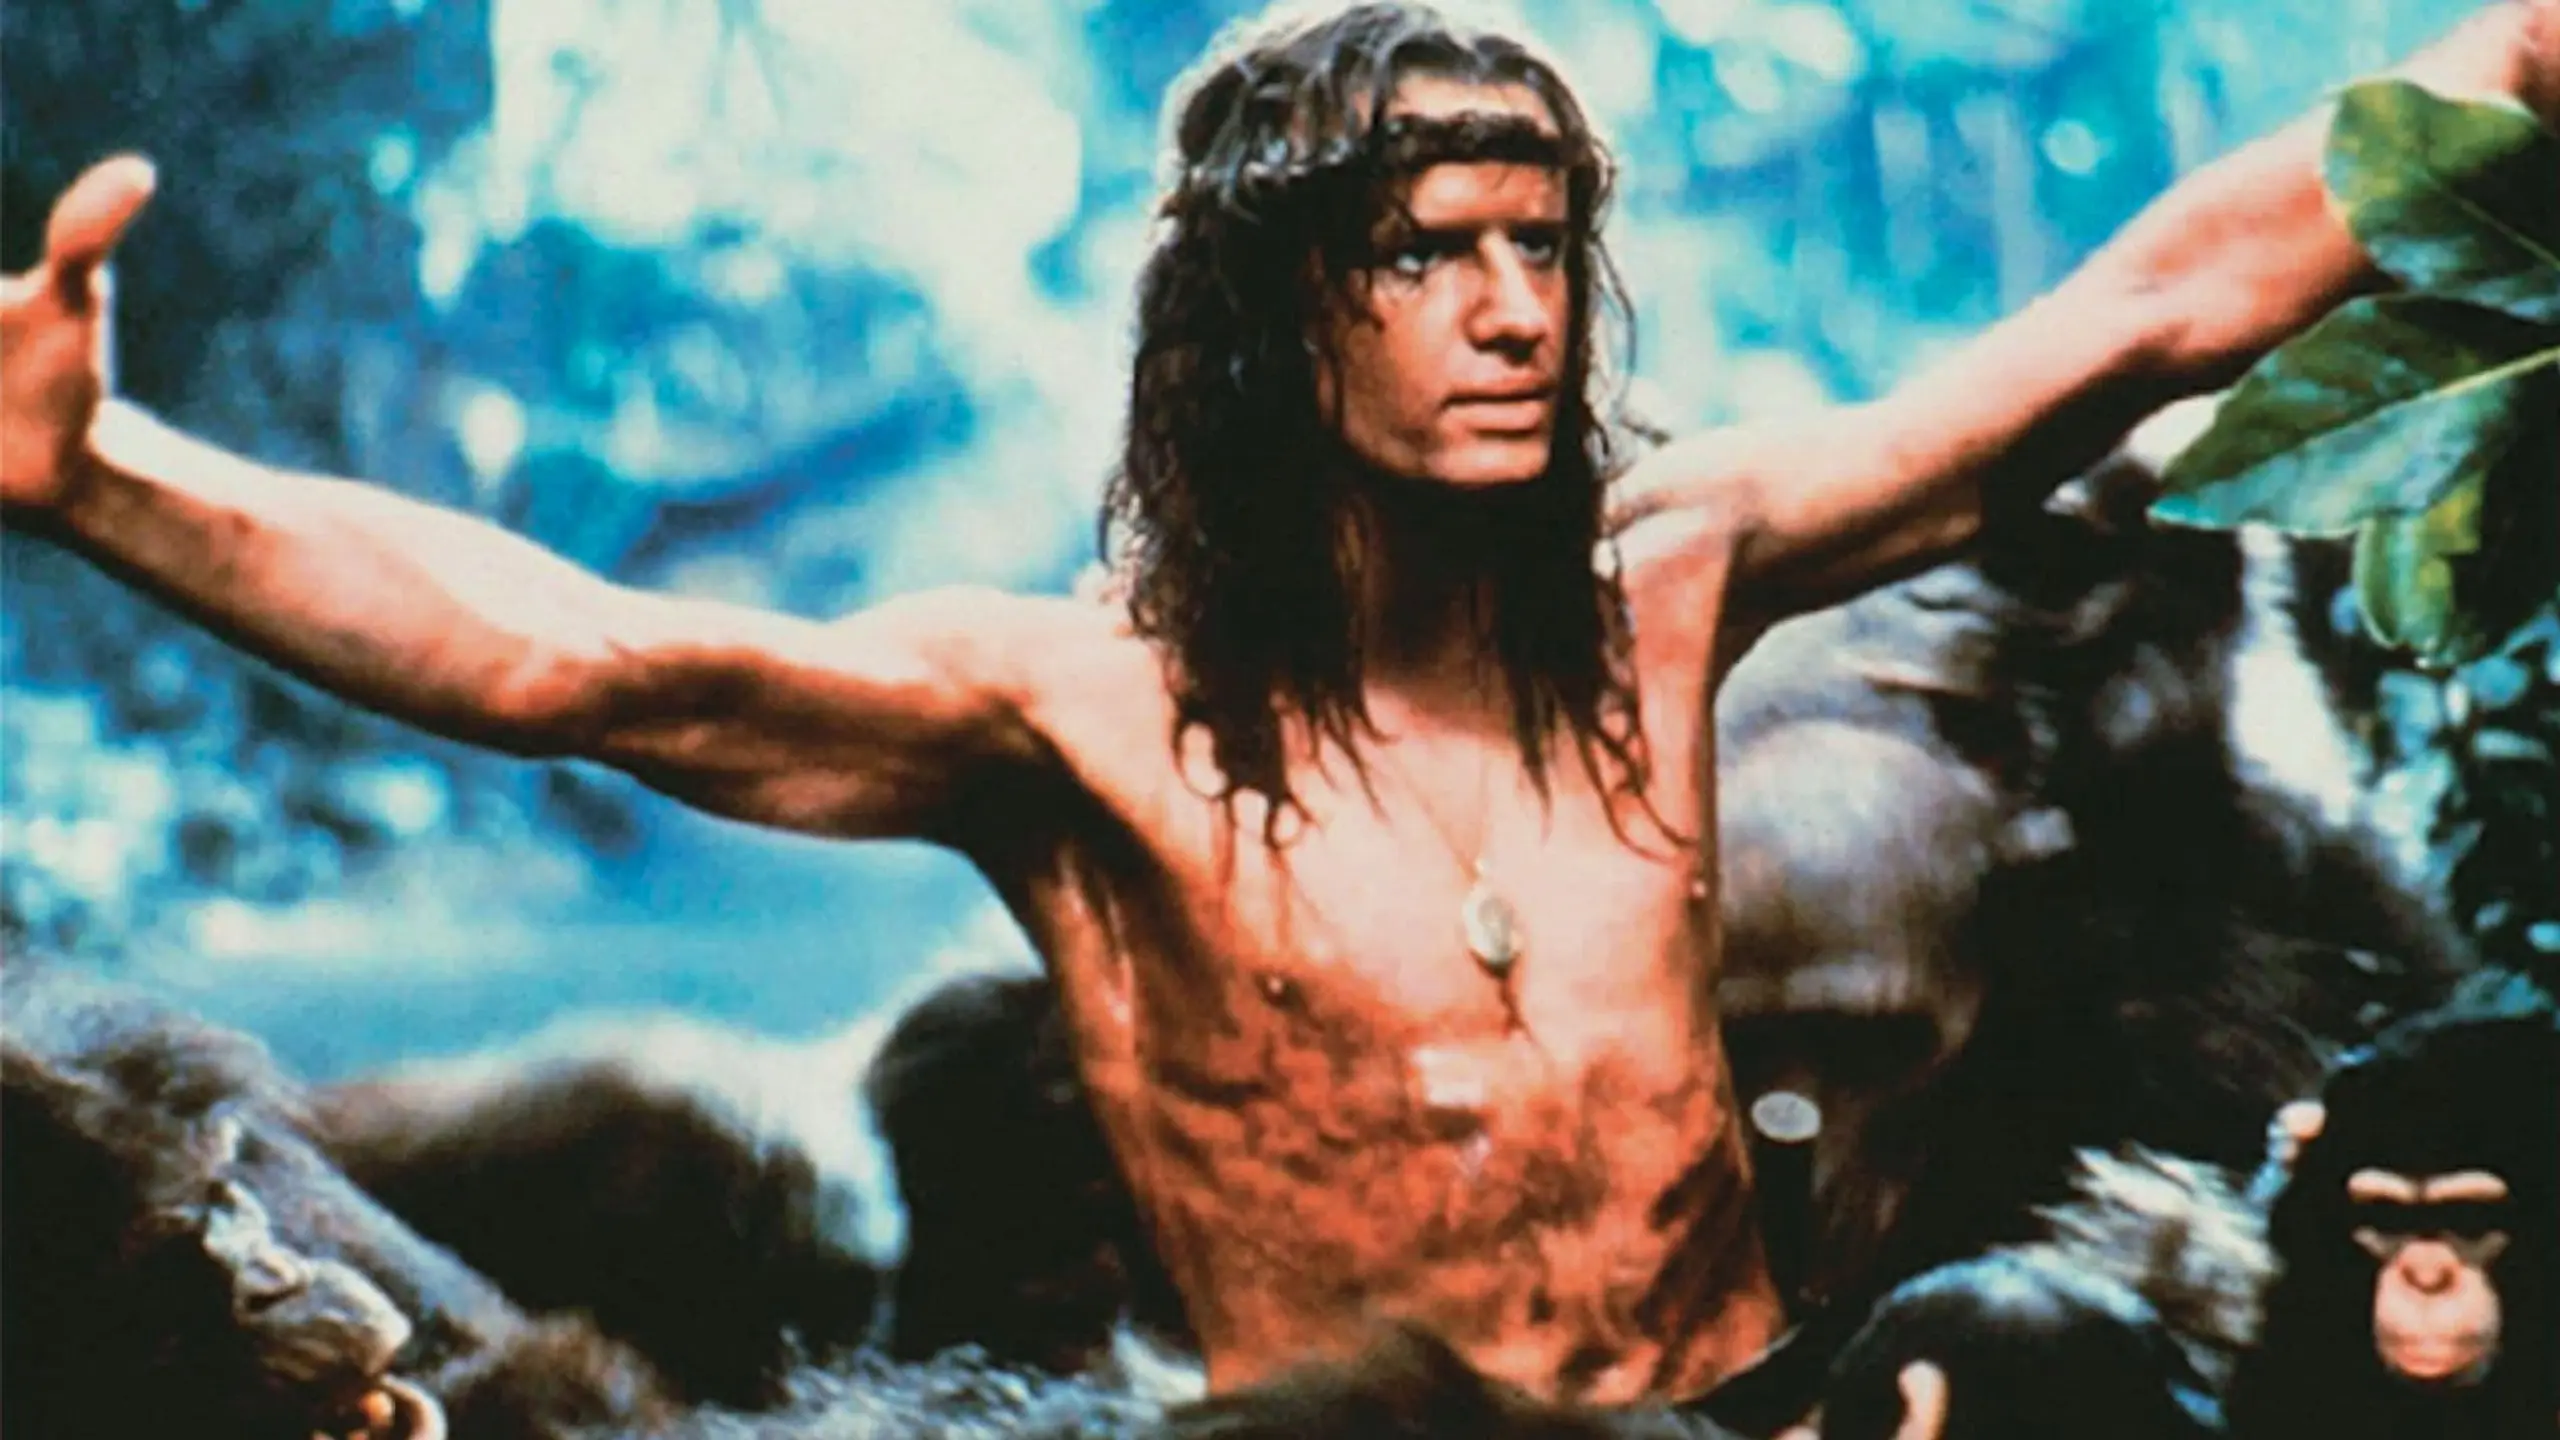 Greystoke – Die Legende von Tarzan, Herr der Affen